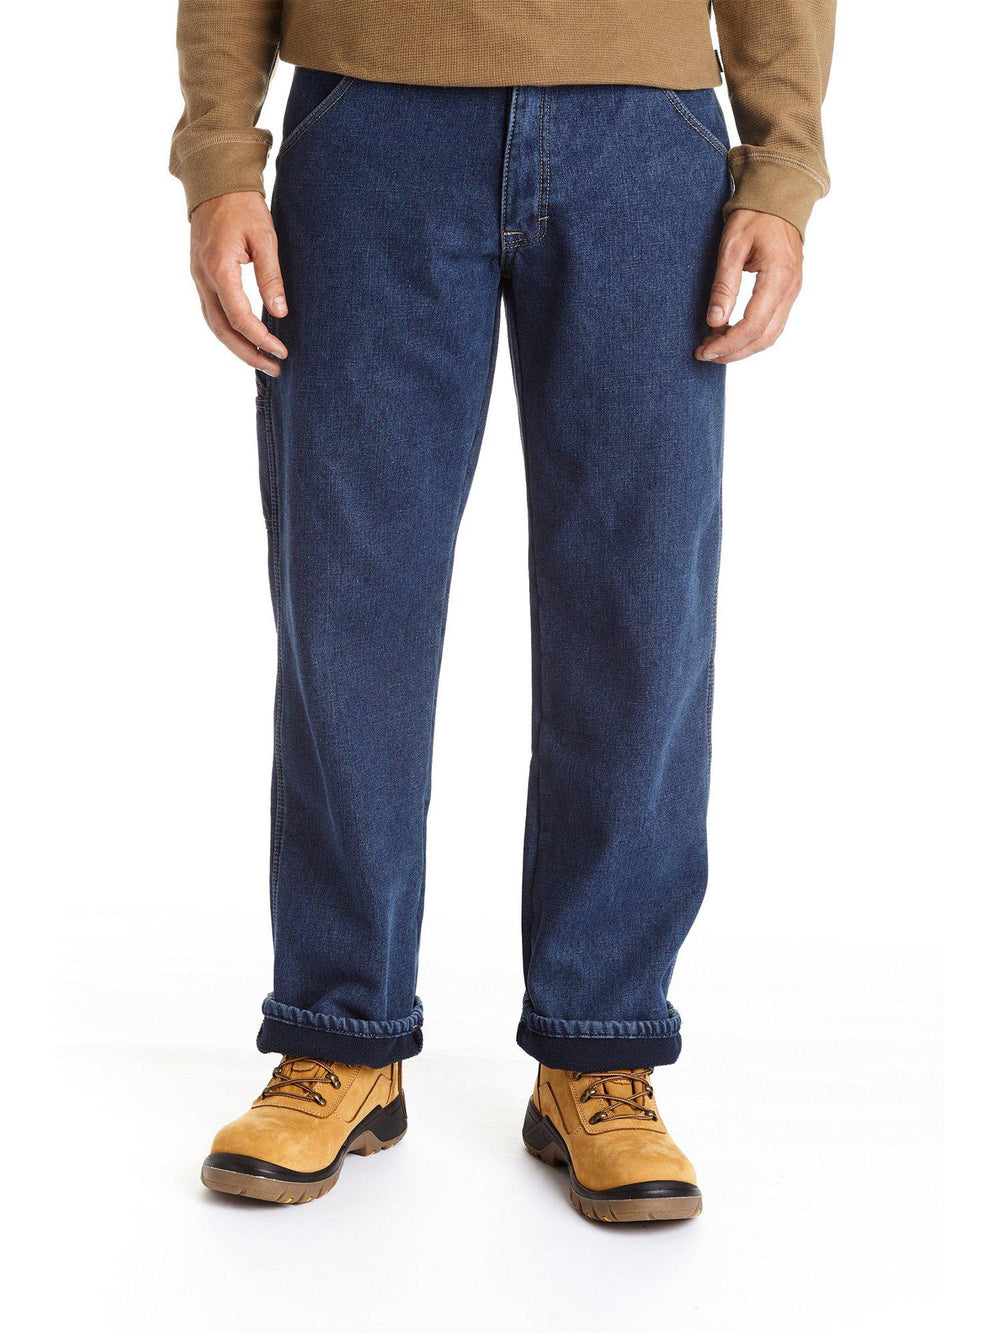 DenimEase™ Fleece Lined Jeans